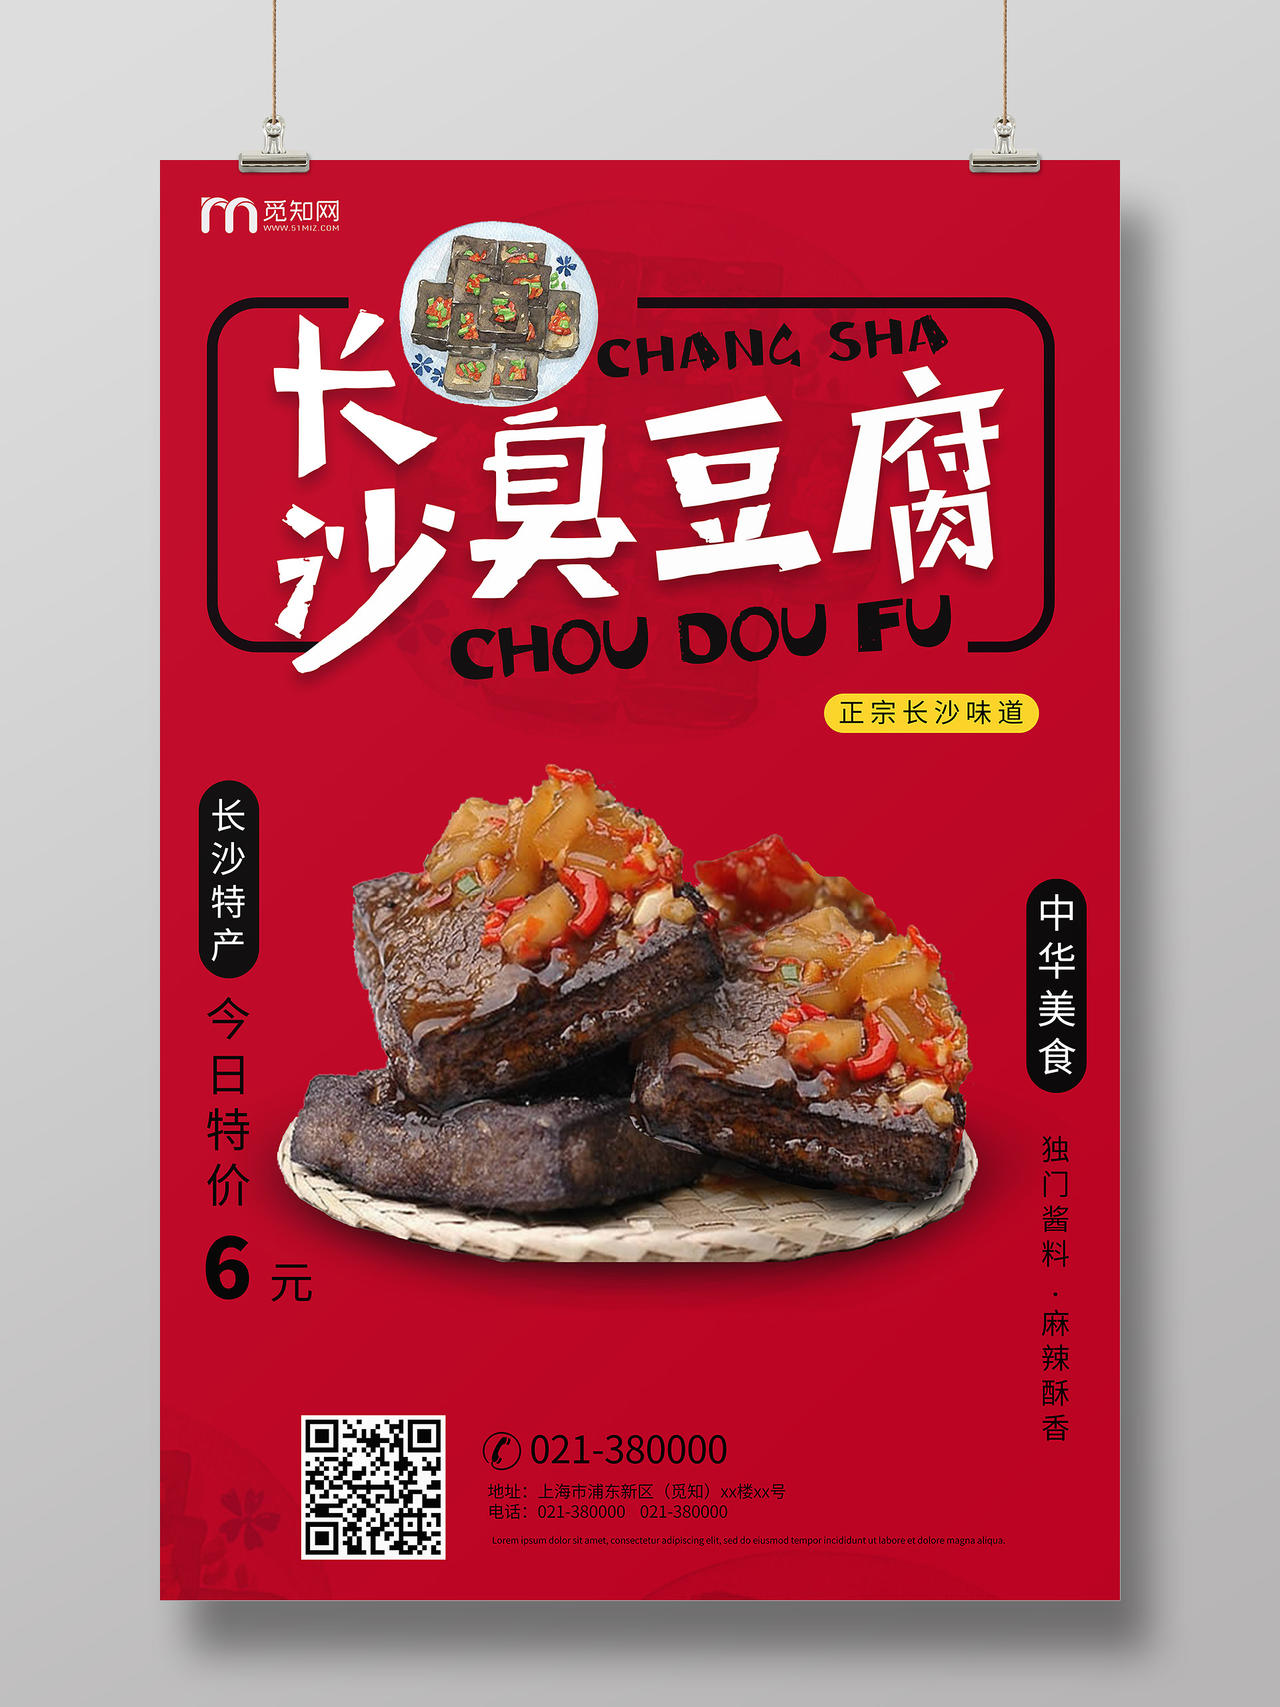 简约红色美食臭豆腐长沙臭豆腐宣传海报